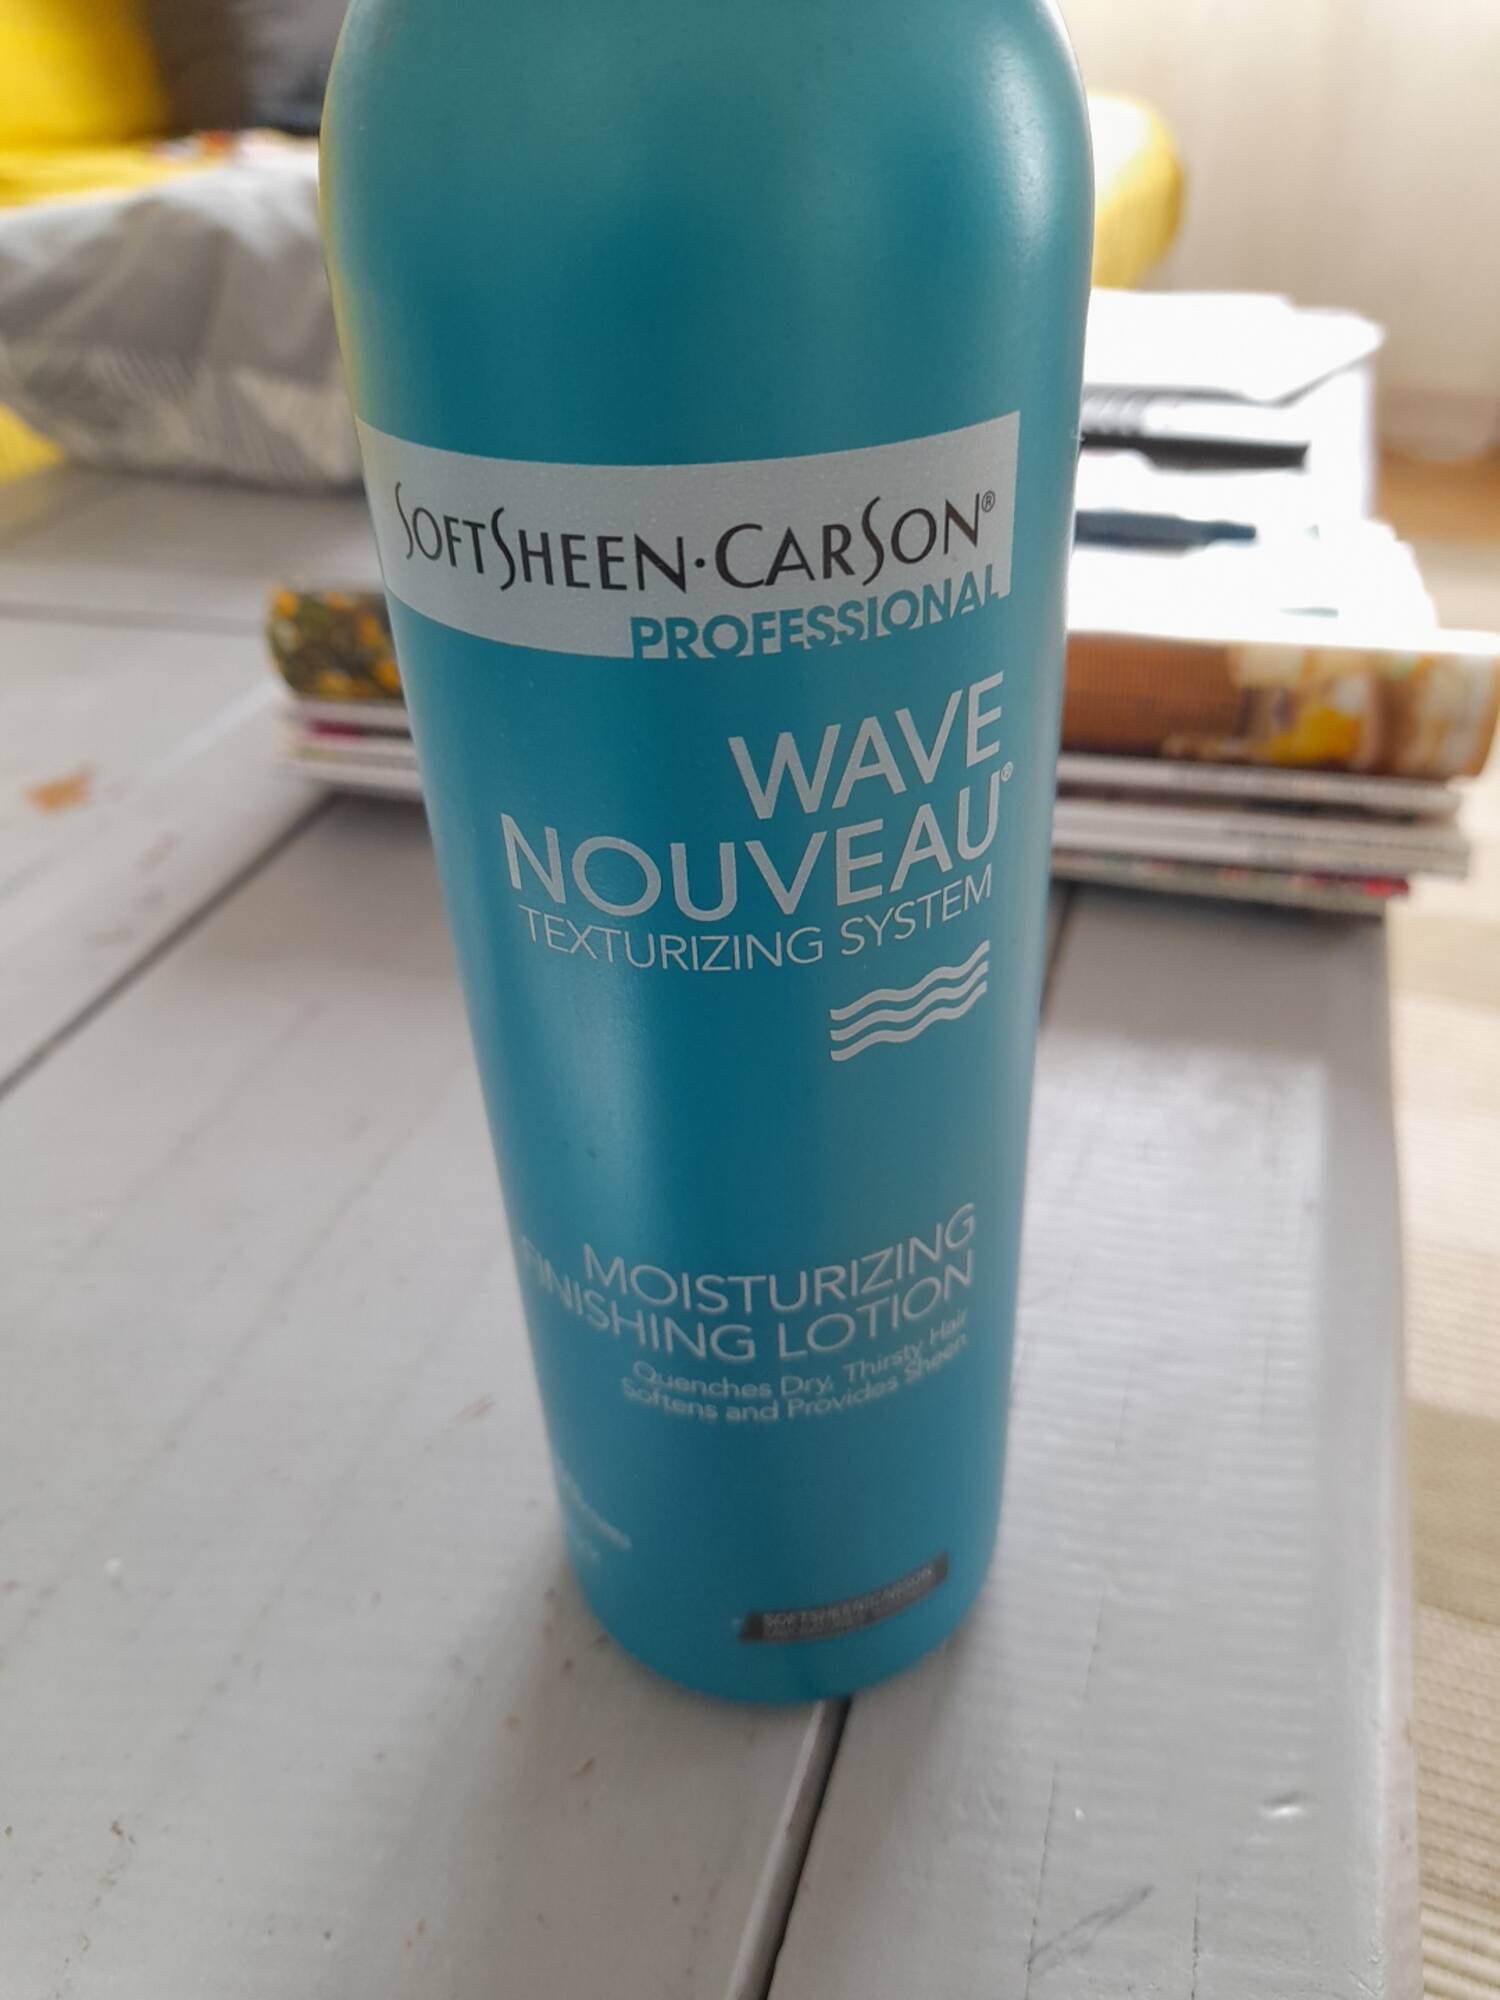 SOFTSHEEN CARSON - Wave nouveau - Moisturizing finishing lotion